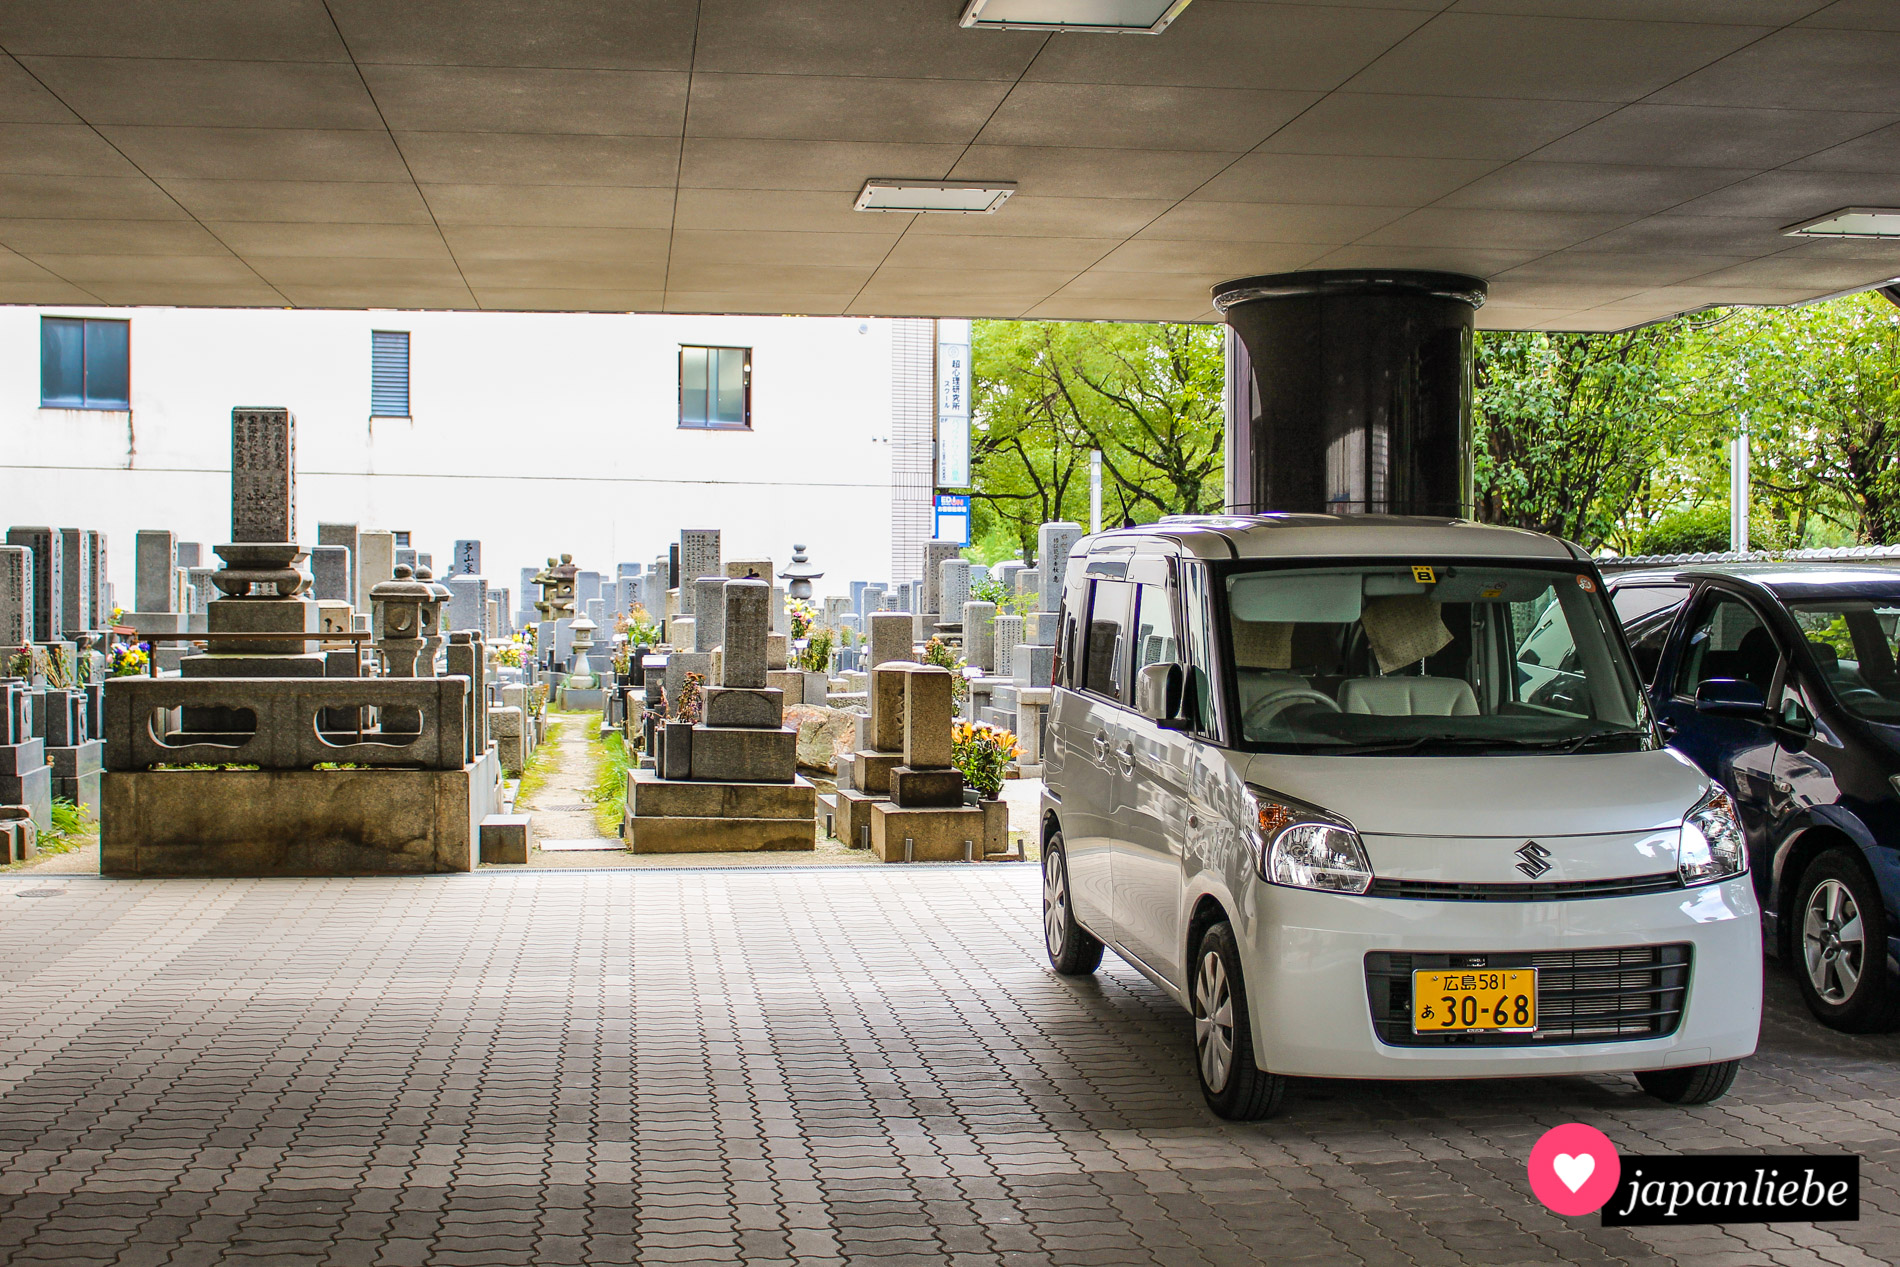 Kein unüblicher Anblick in Japan: ein Friedhof in Hiroshima liegt direkt neben dem Parkplatz eines Wohnhauses.